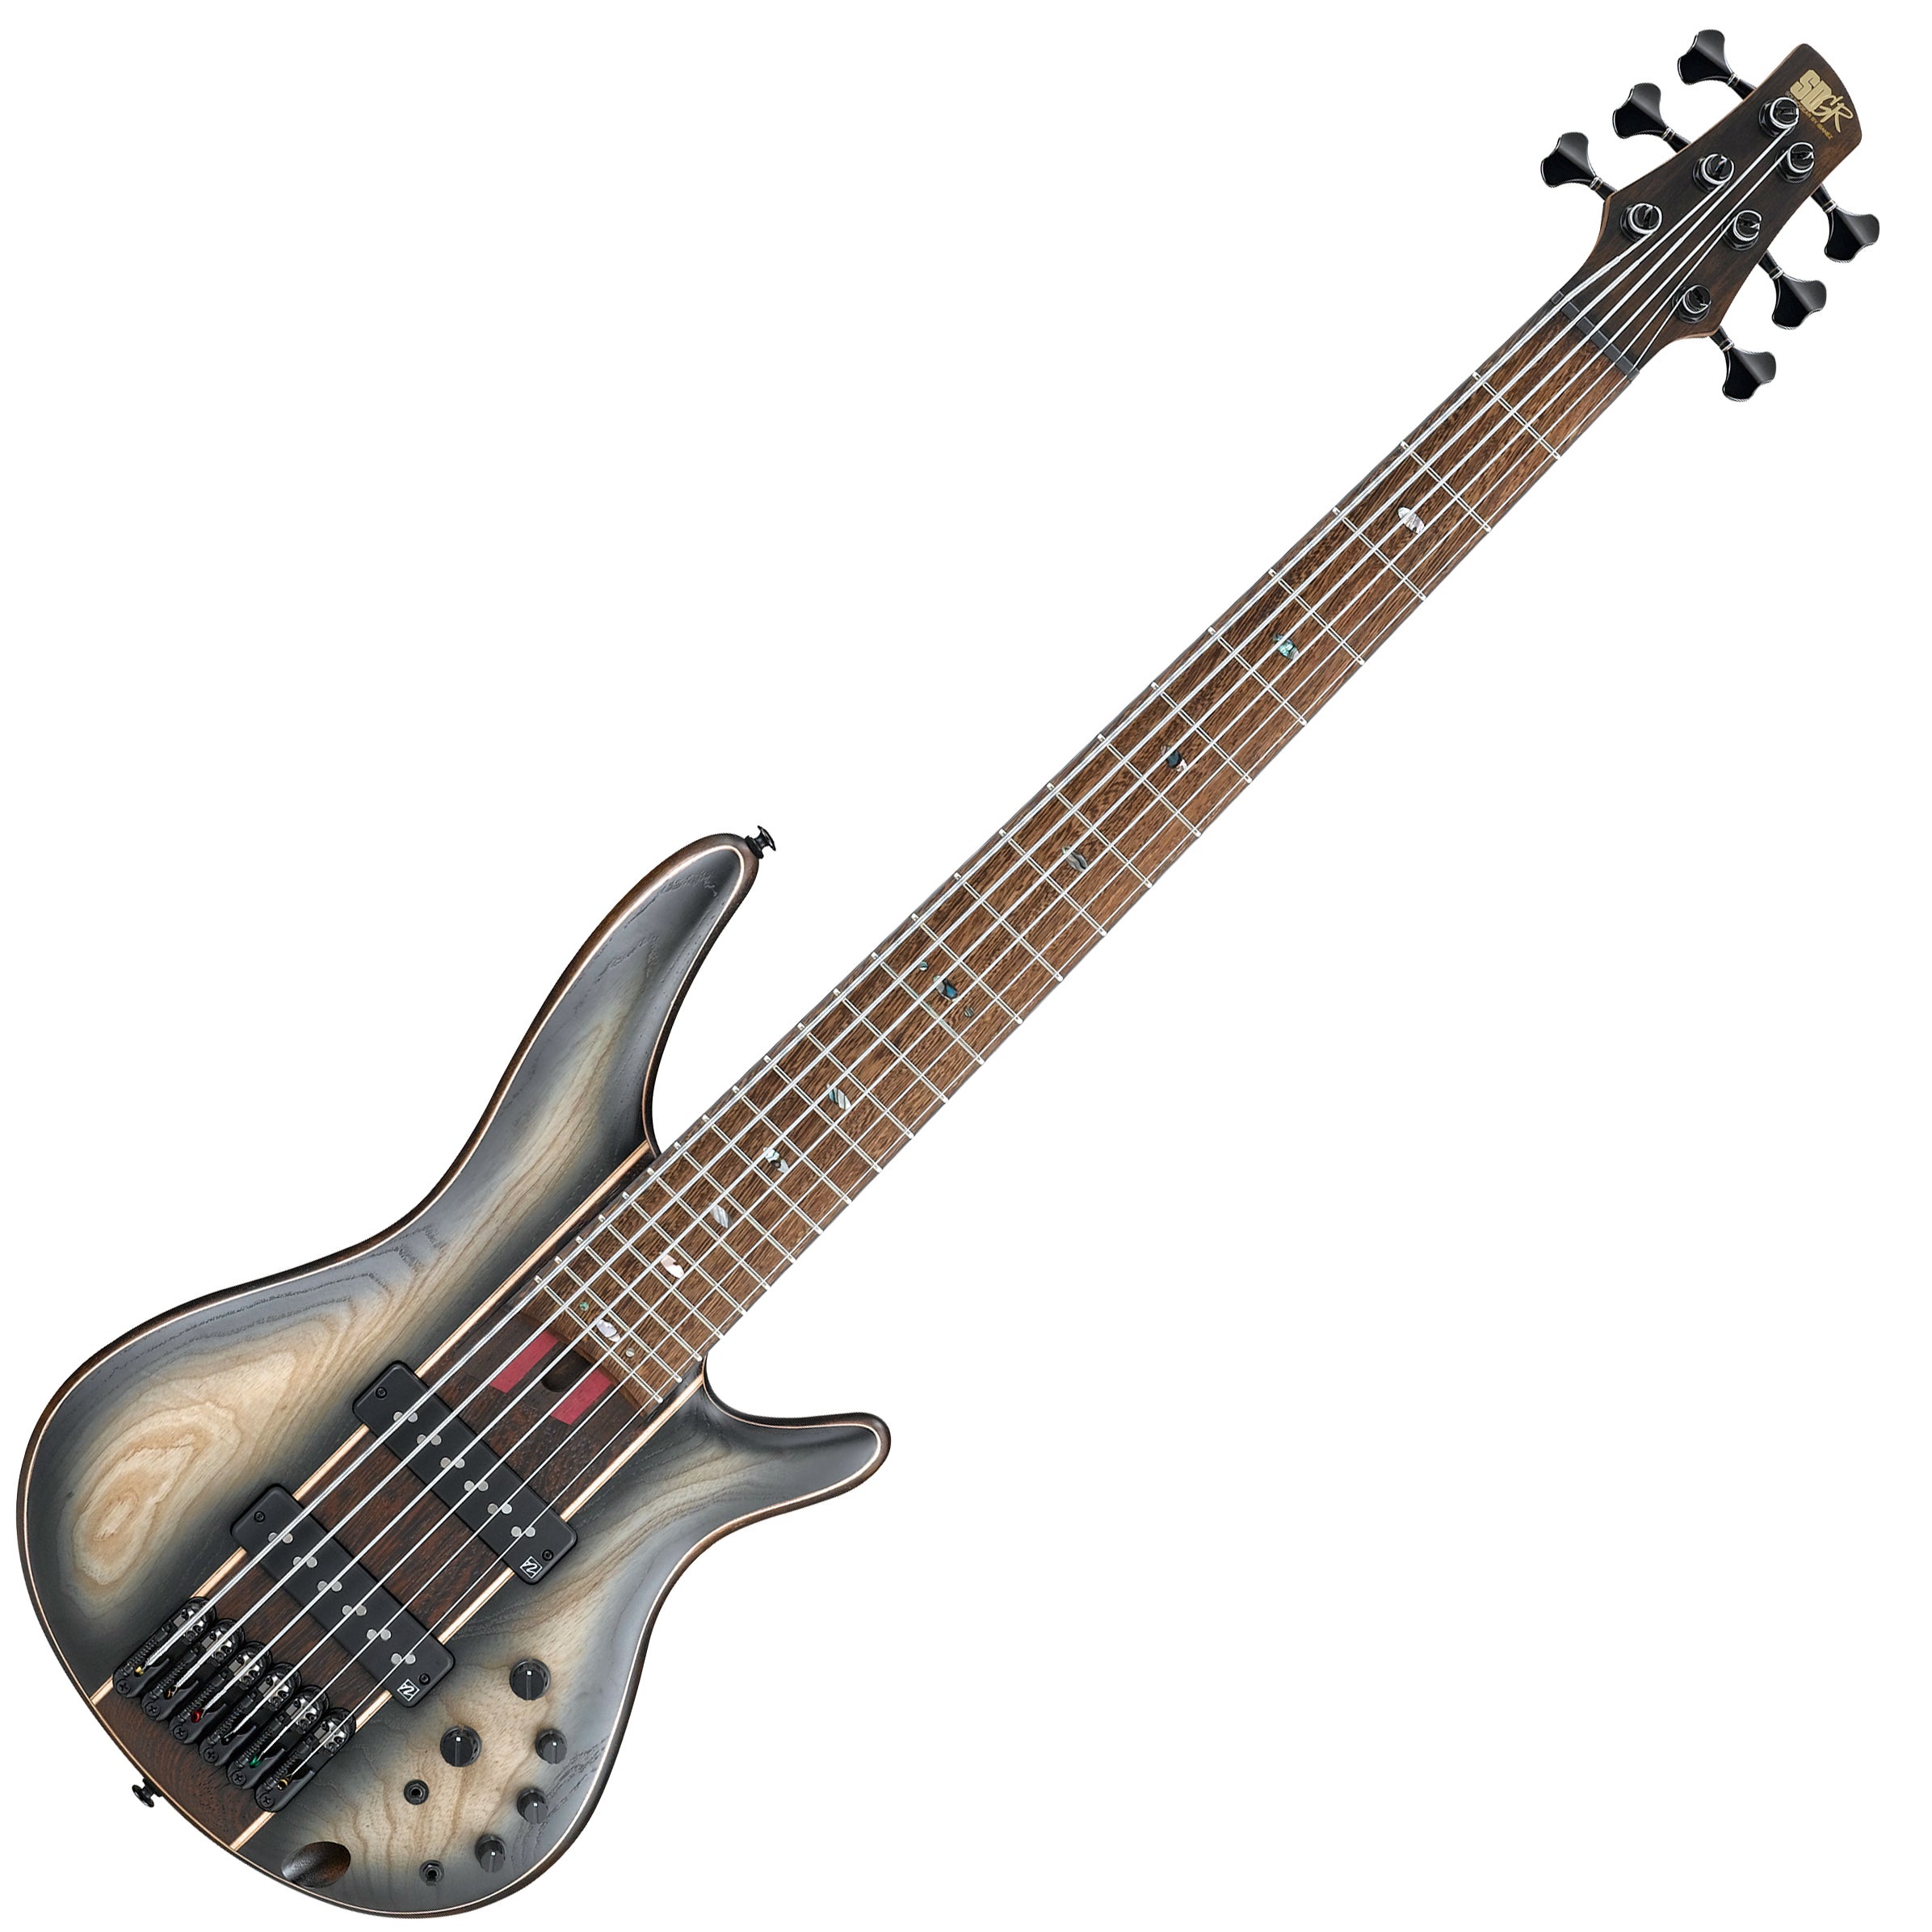 ibanez SR1346B Premium 6弦ベース フレットレス楽器 - エレキベース